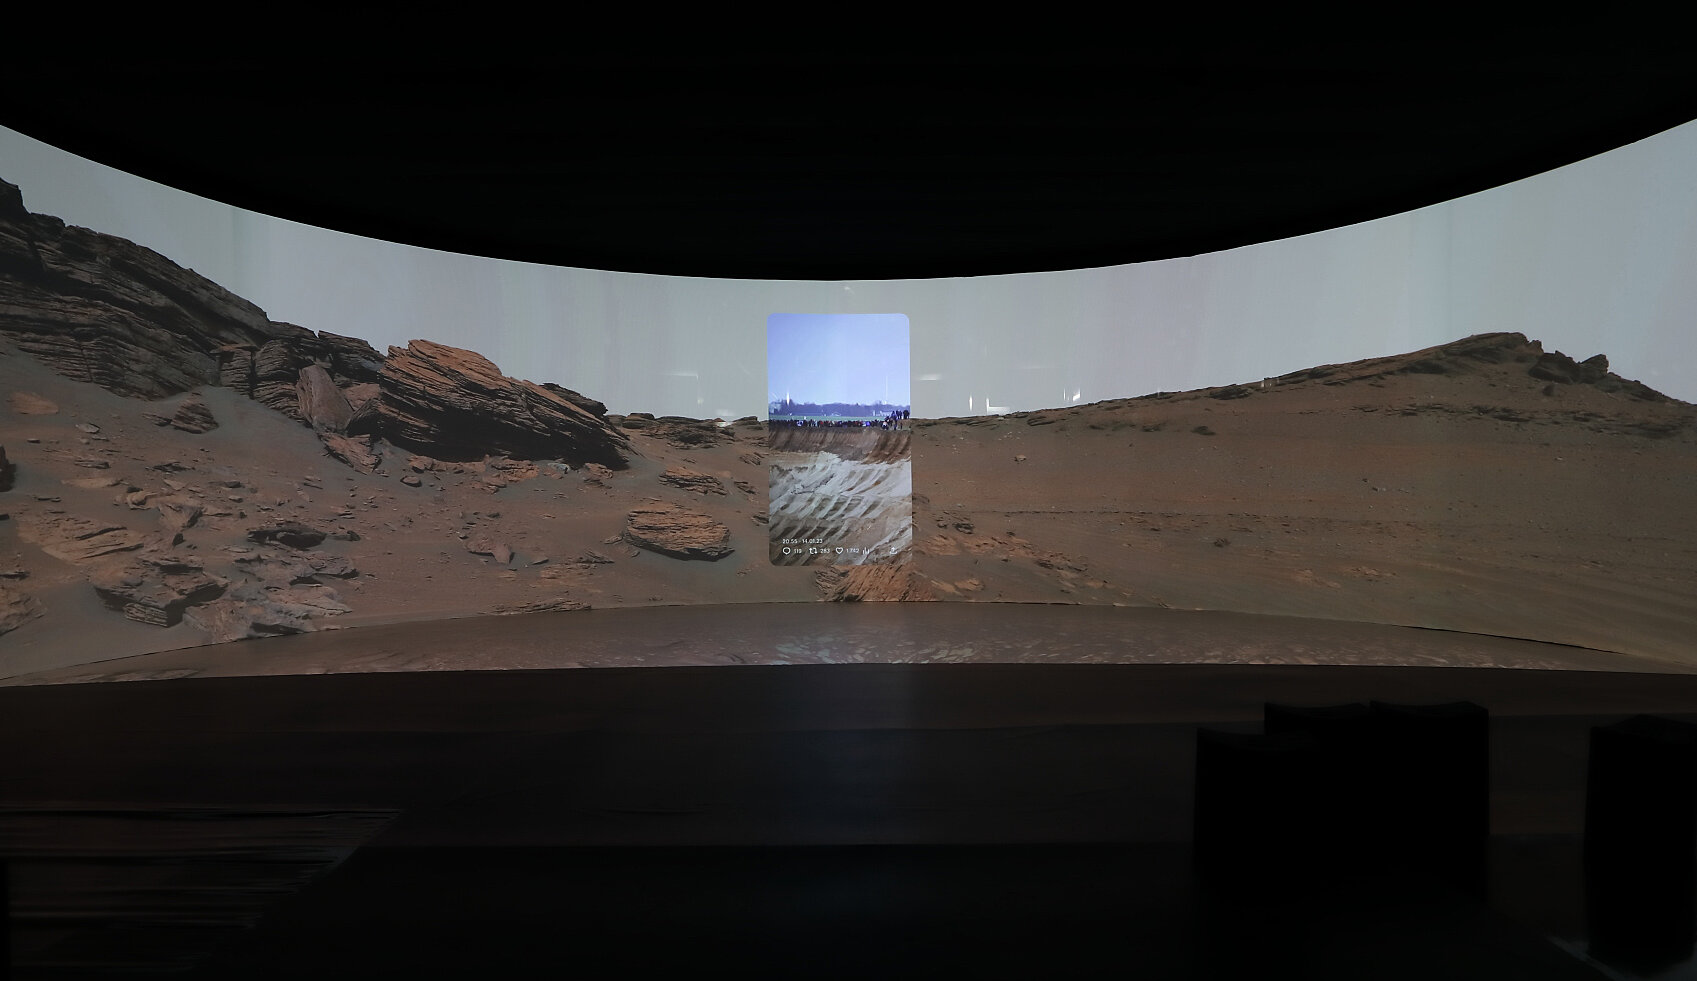 Foto des Videobeitrags "Passage" der Künstlerin Adina Camhy, zu sehen ist die Marsoberfläche und ein integriertes Foto von der Besetzung des Dorfes Lüzerath